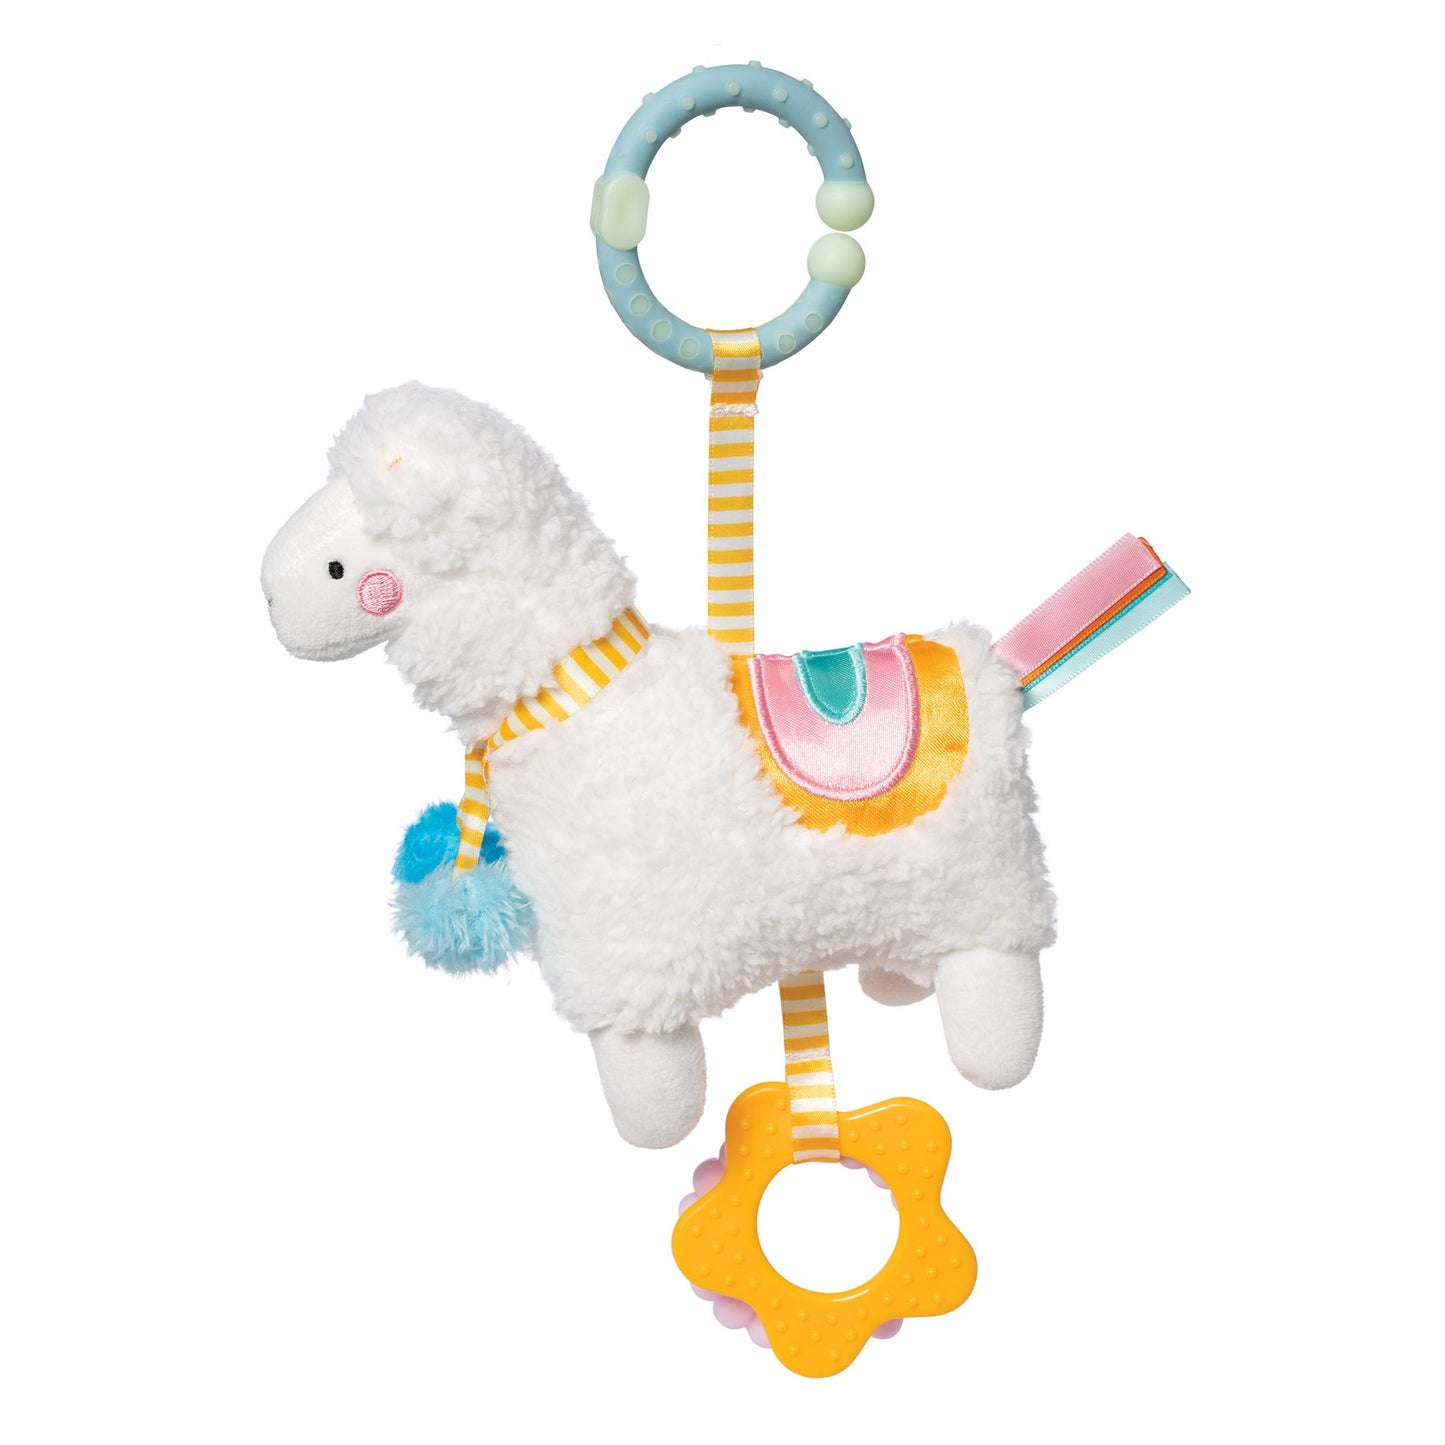 Manhattan Toy Llama Travel Toy